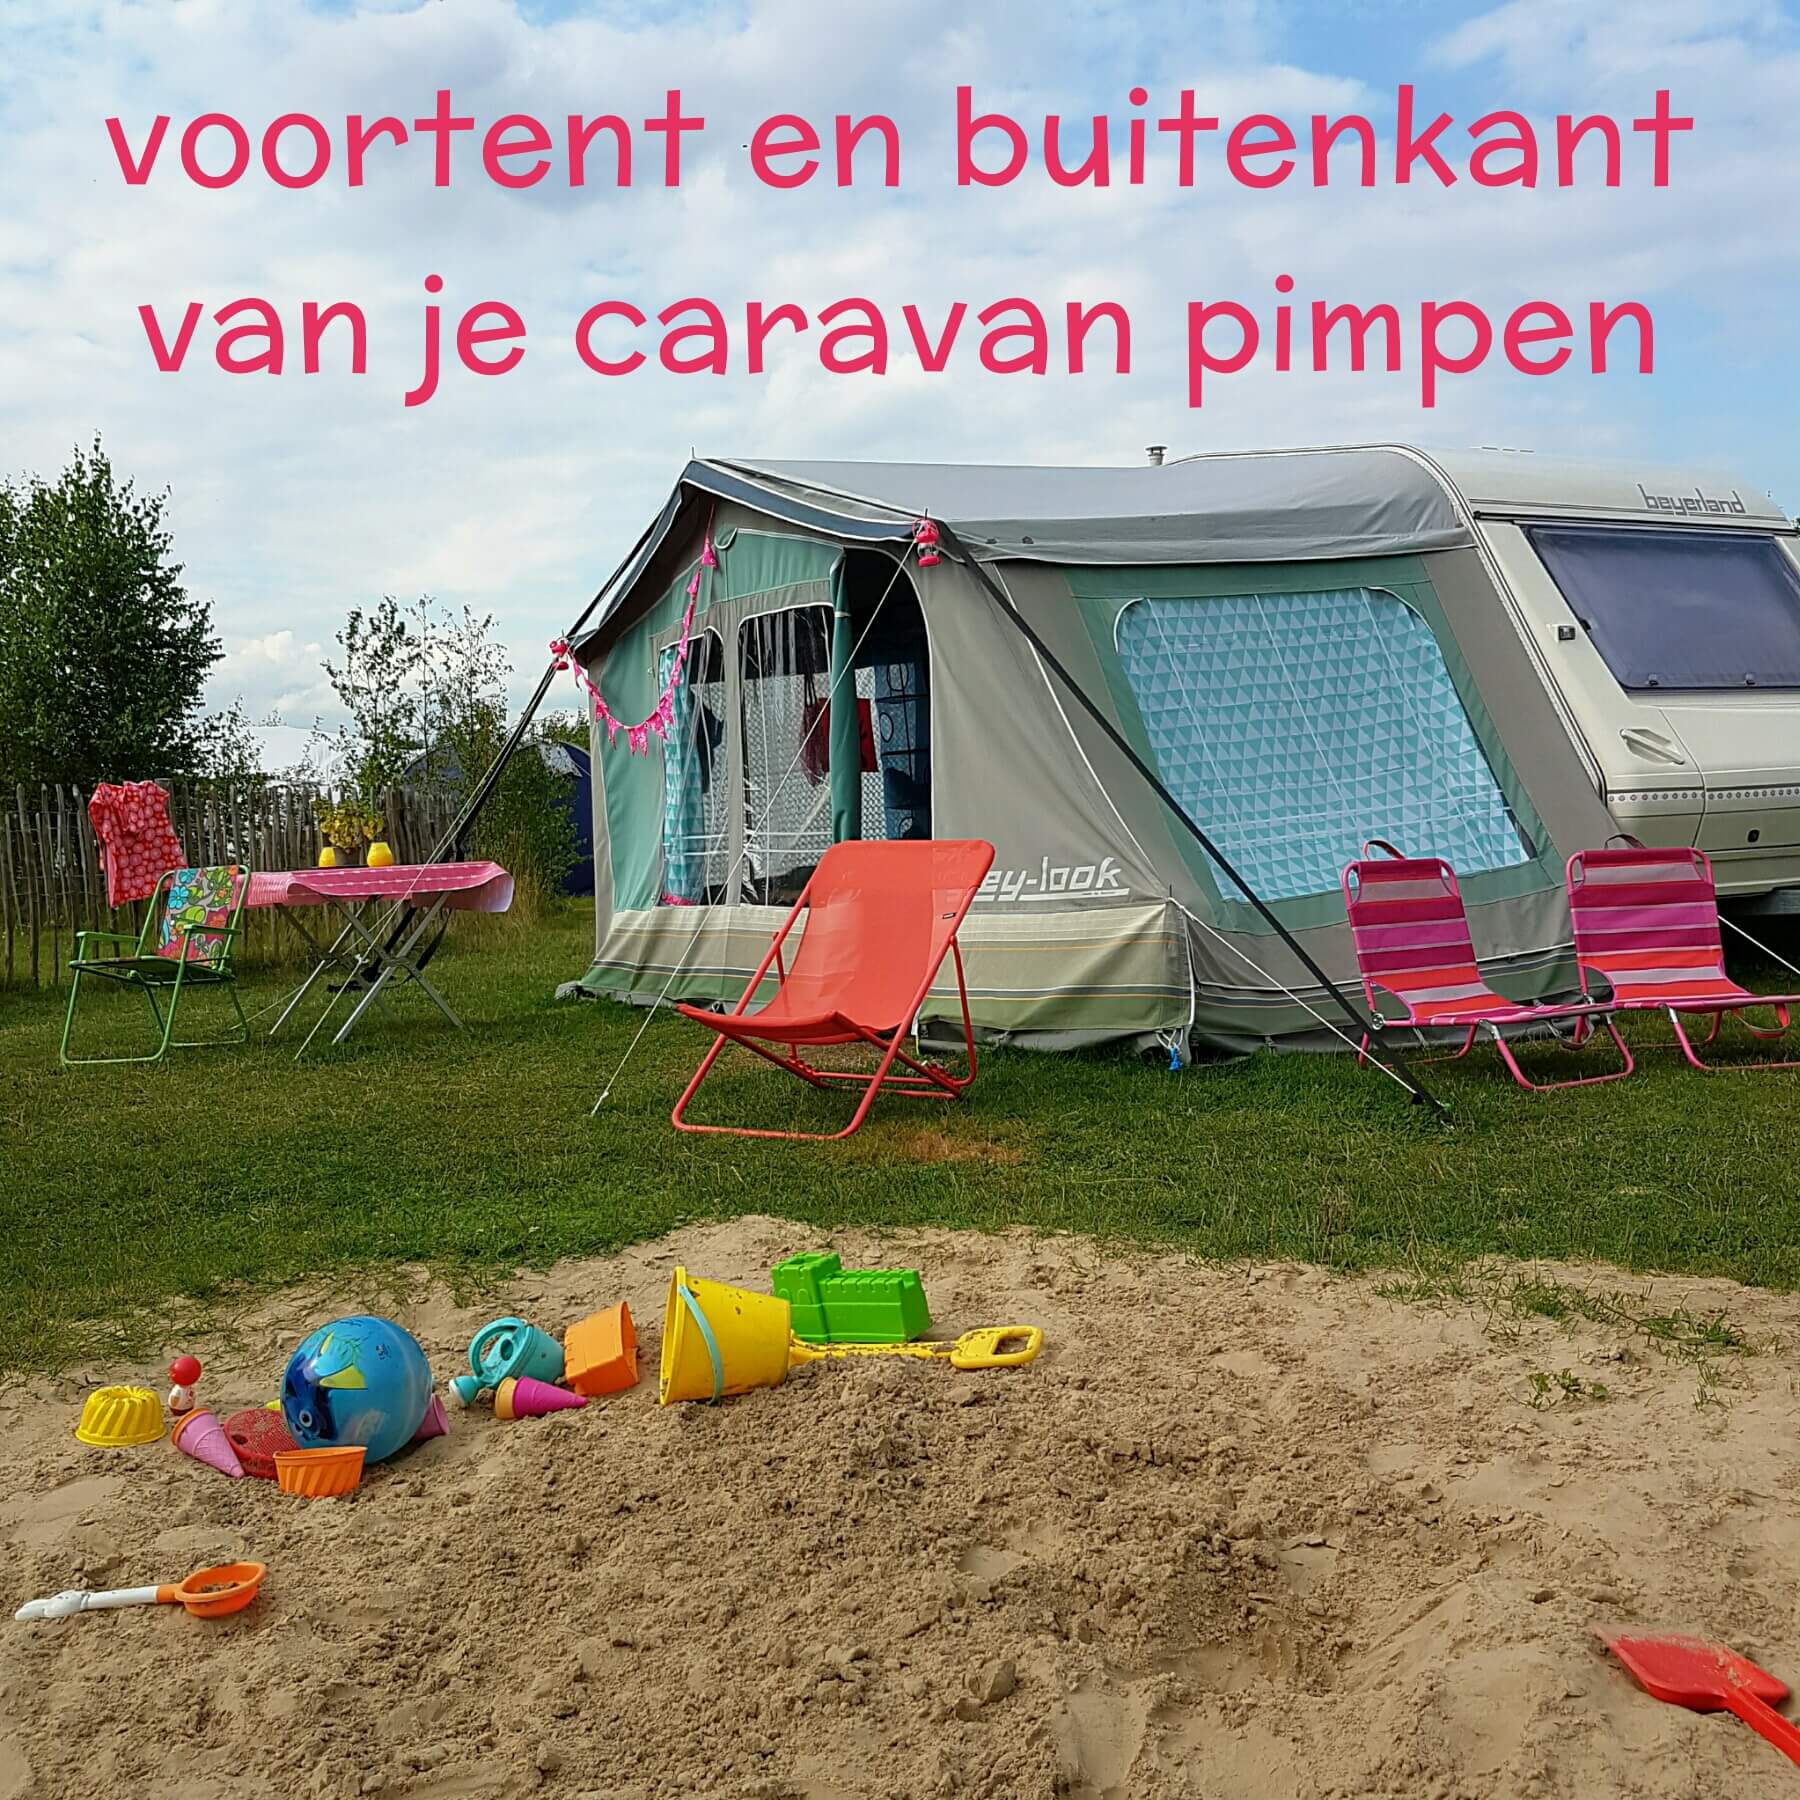 Allergie Snor Stroomopwaarts Hippe sleurhut: de voortent en de buitenkant van je caravan pimpen Leuk met  kids